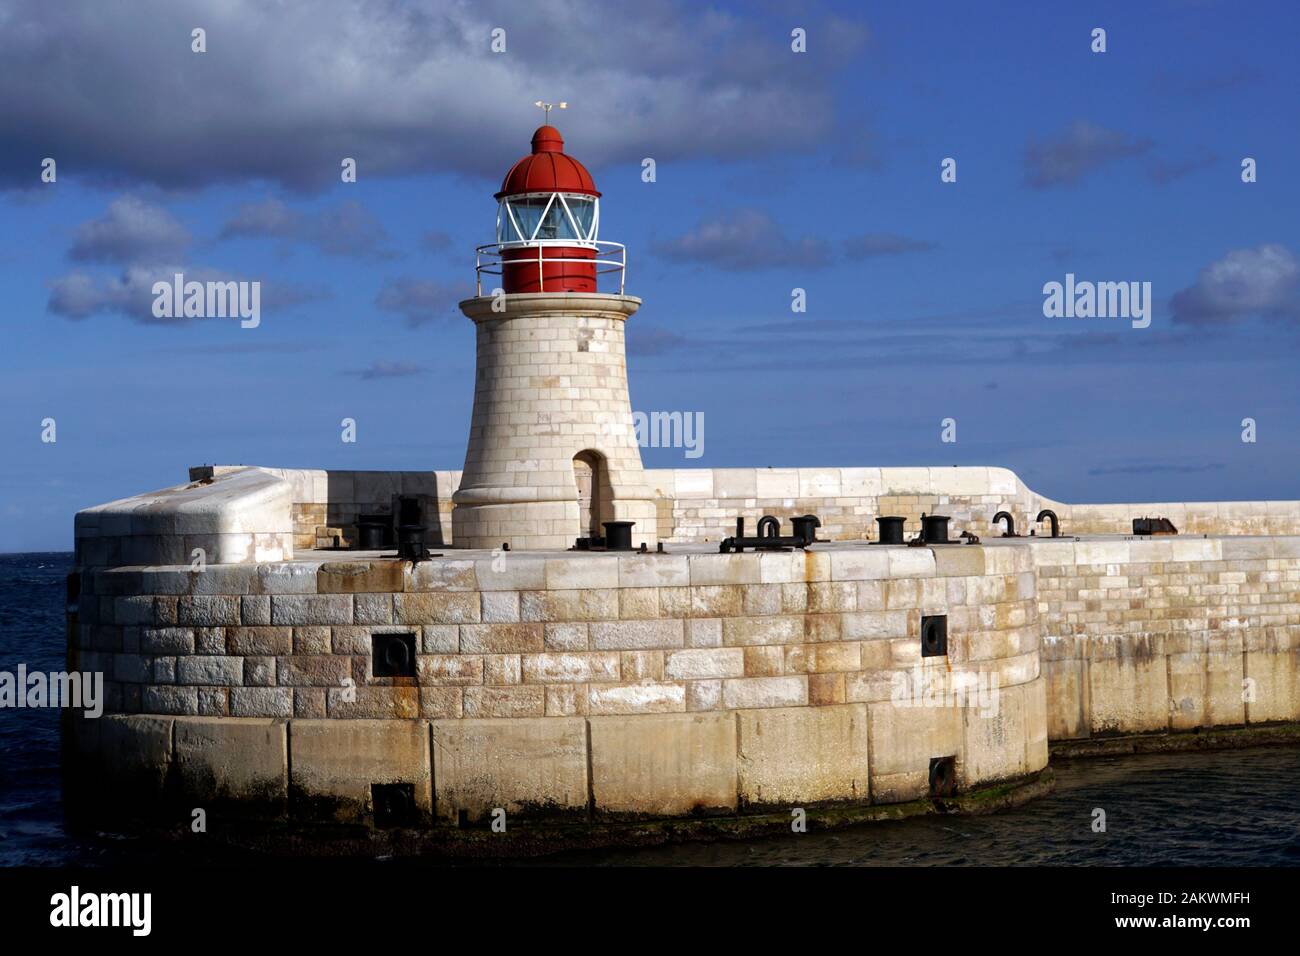 Hafenrundfahrt Valletta - Leuchtturm an der Einfahrt zum Grand Harbor, Malta Stock Photo